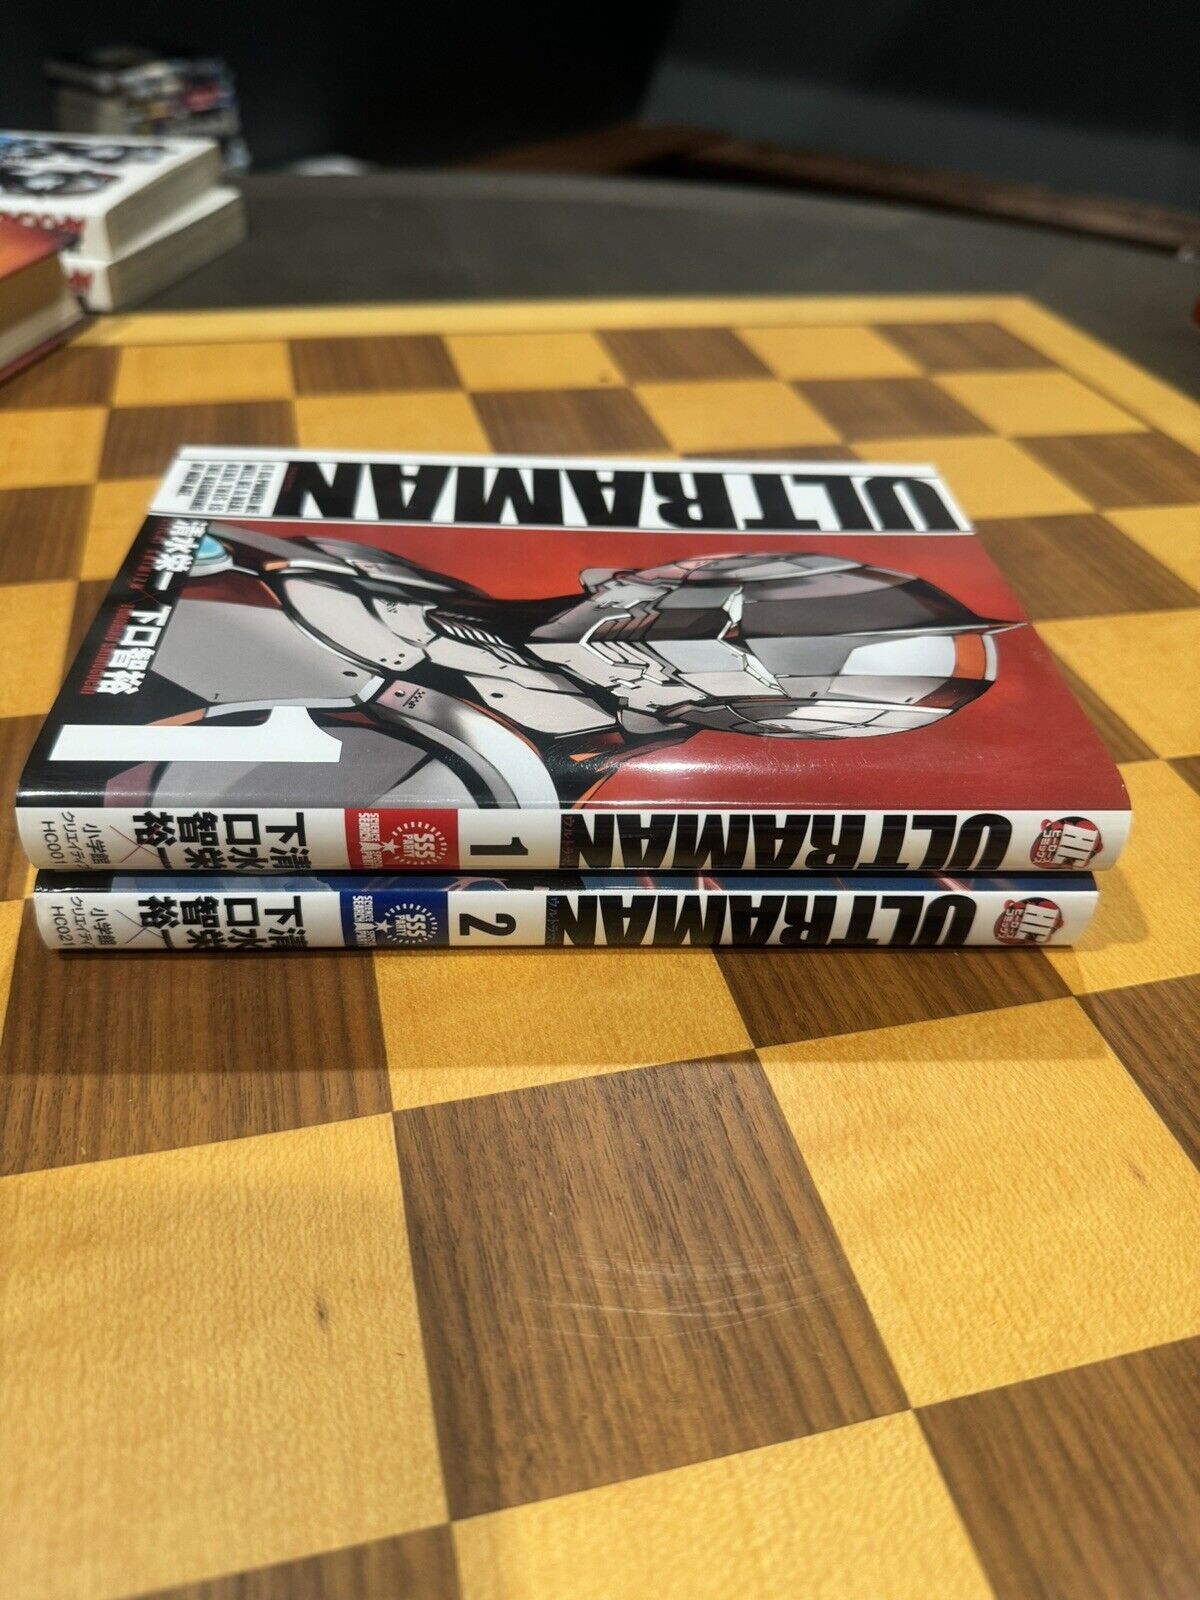 Ultraman Manga In Japanese Language Vol 1-2 Lot